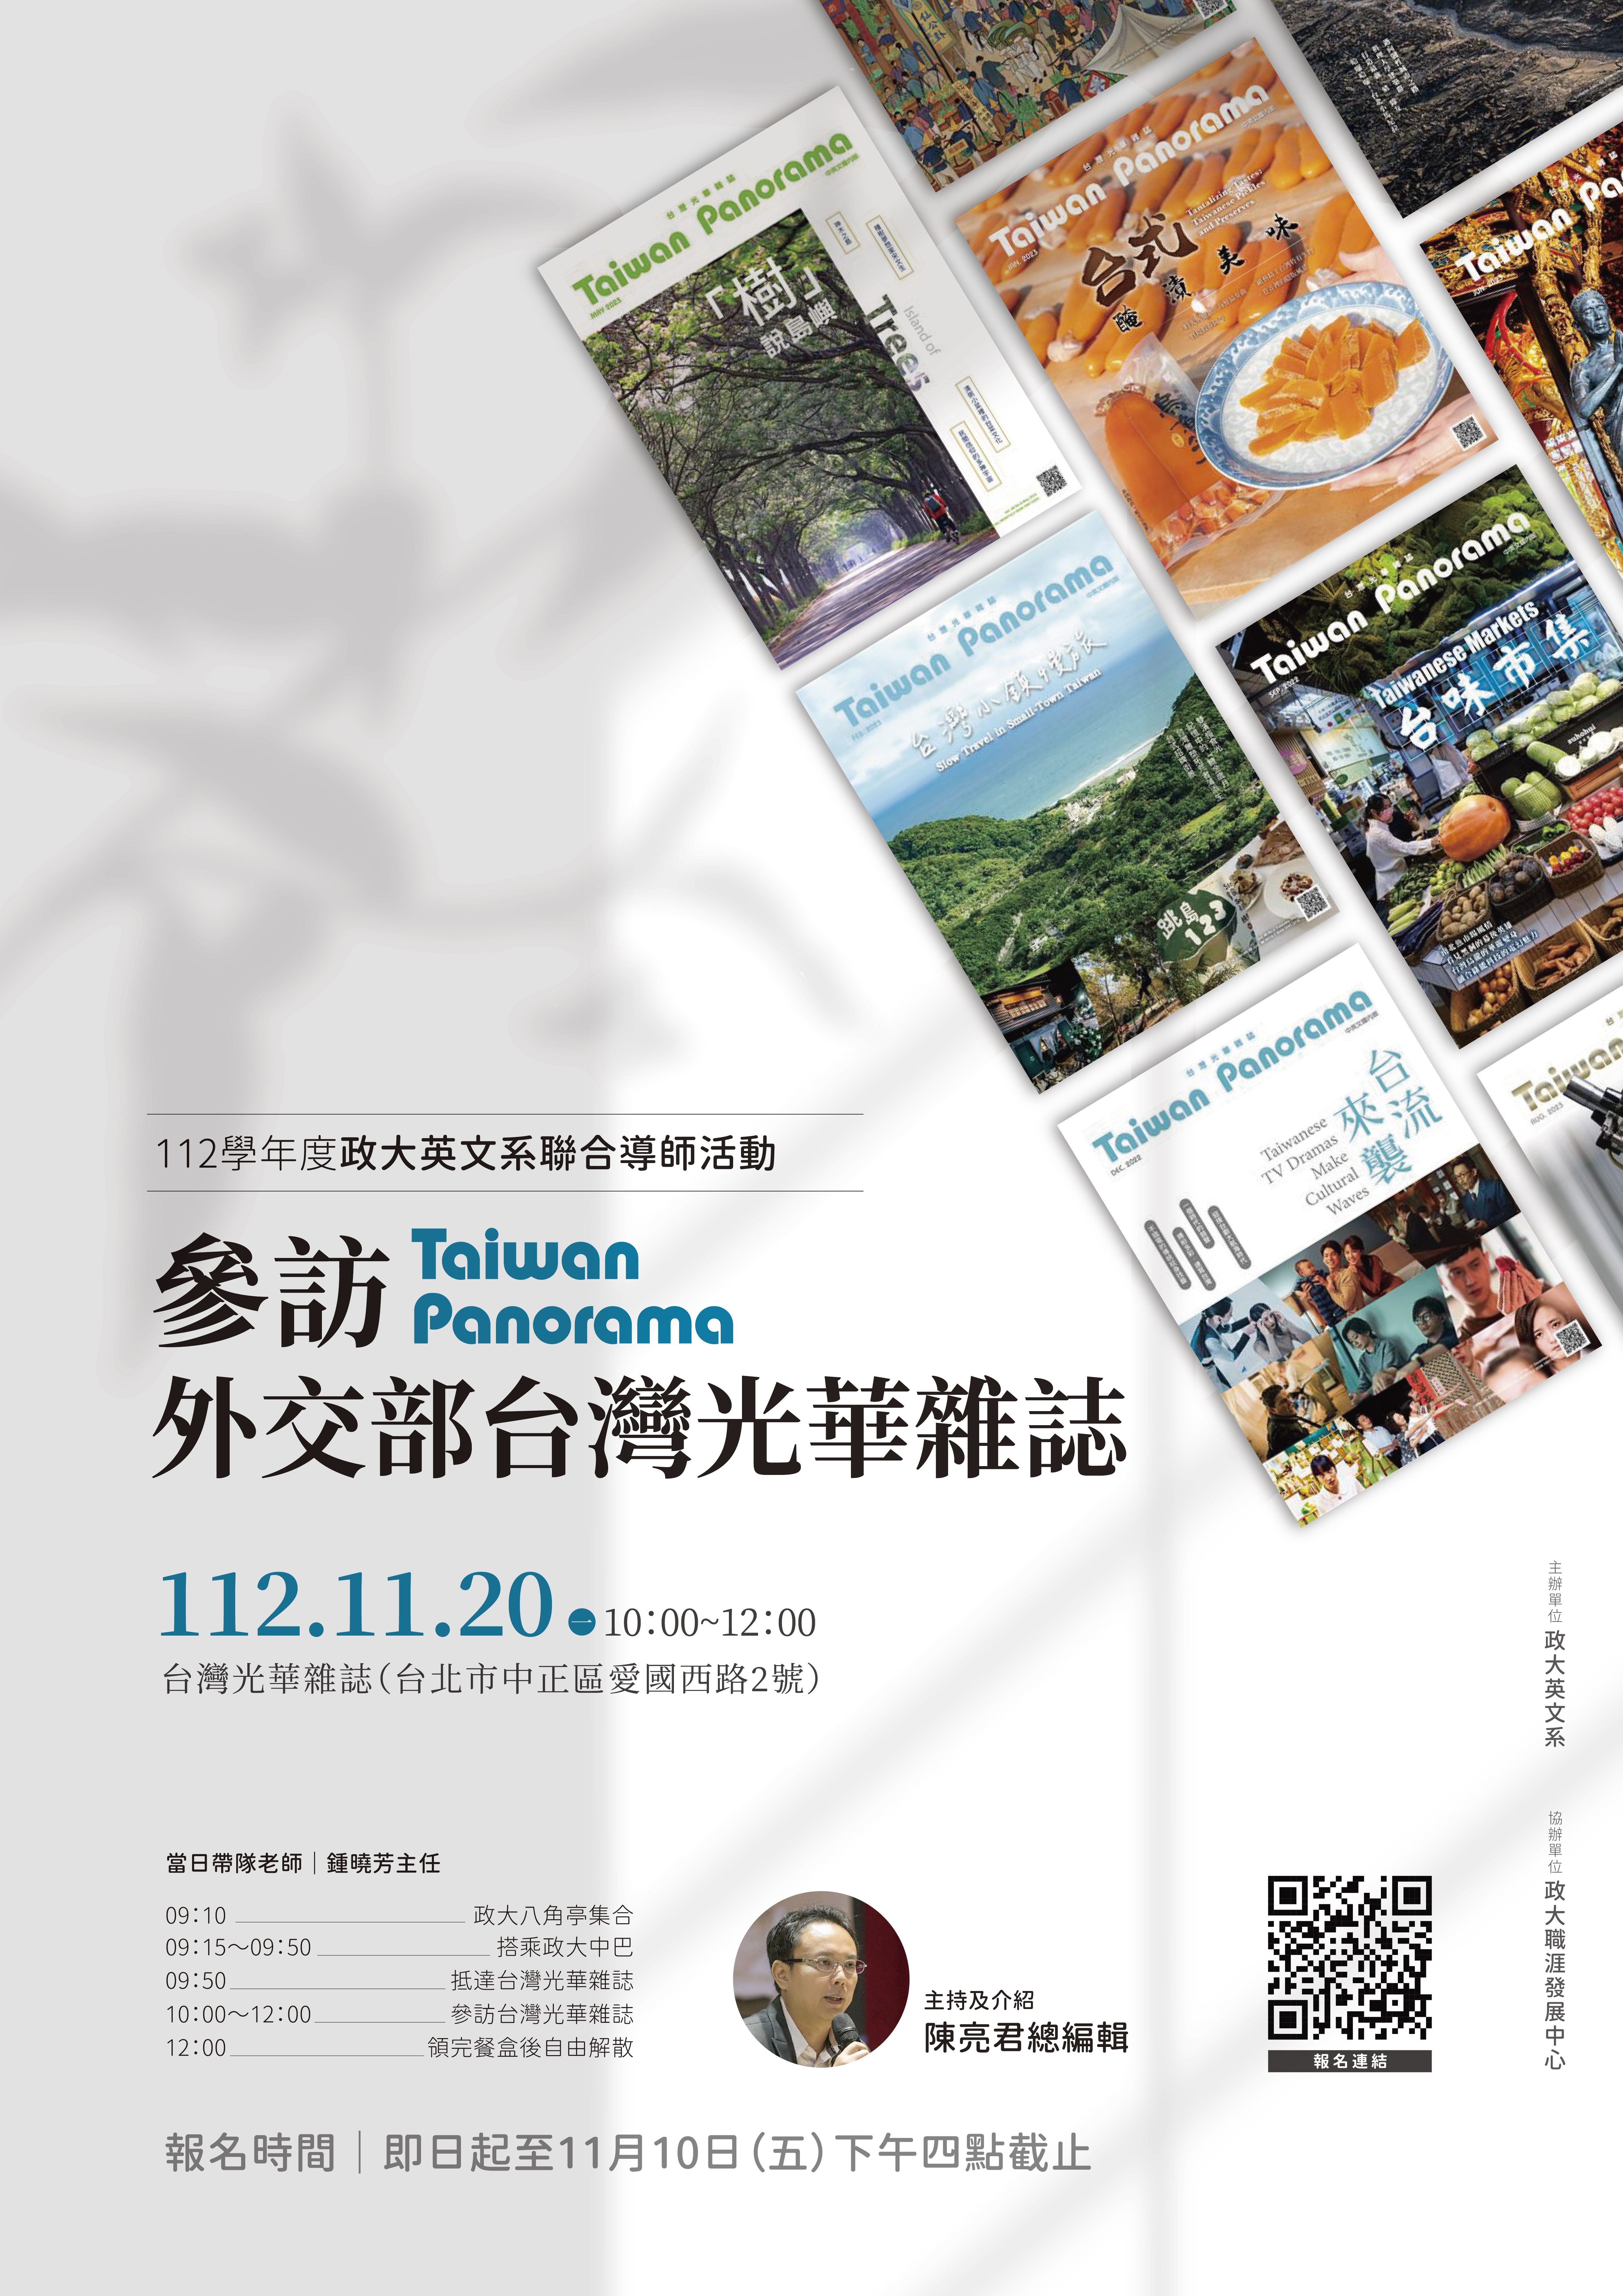 Joint Advisor/Advisee Activitiy-Visiting Taiwan Panorama